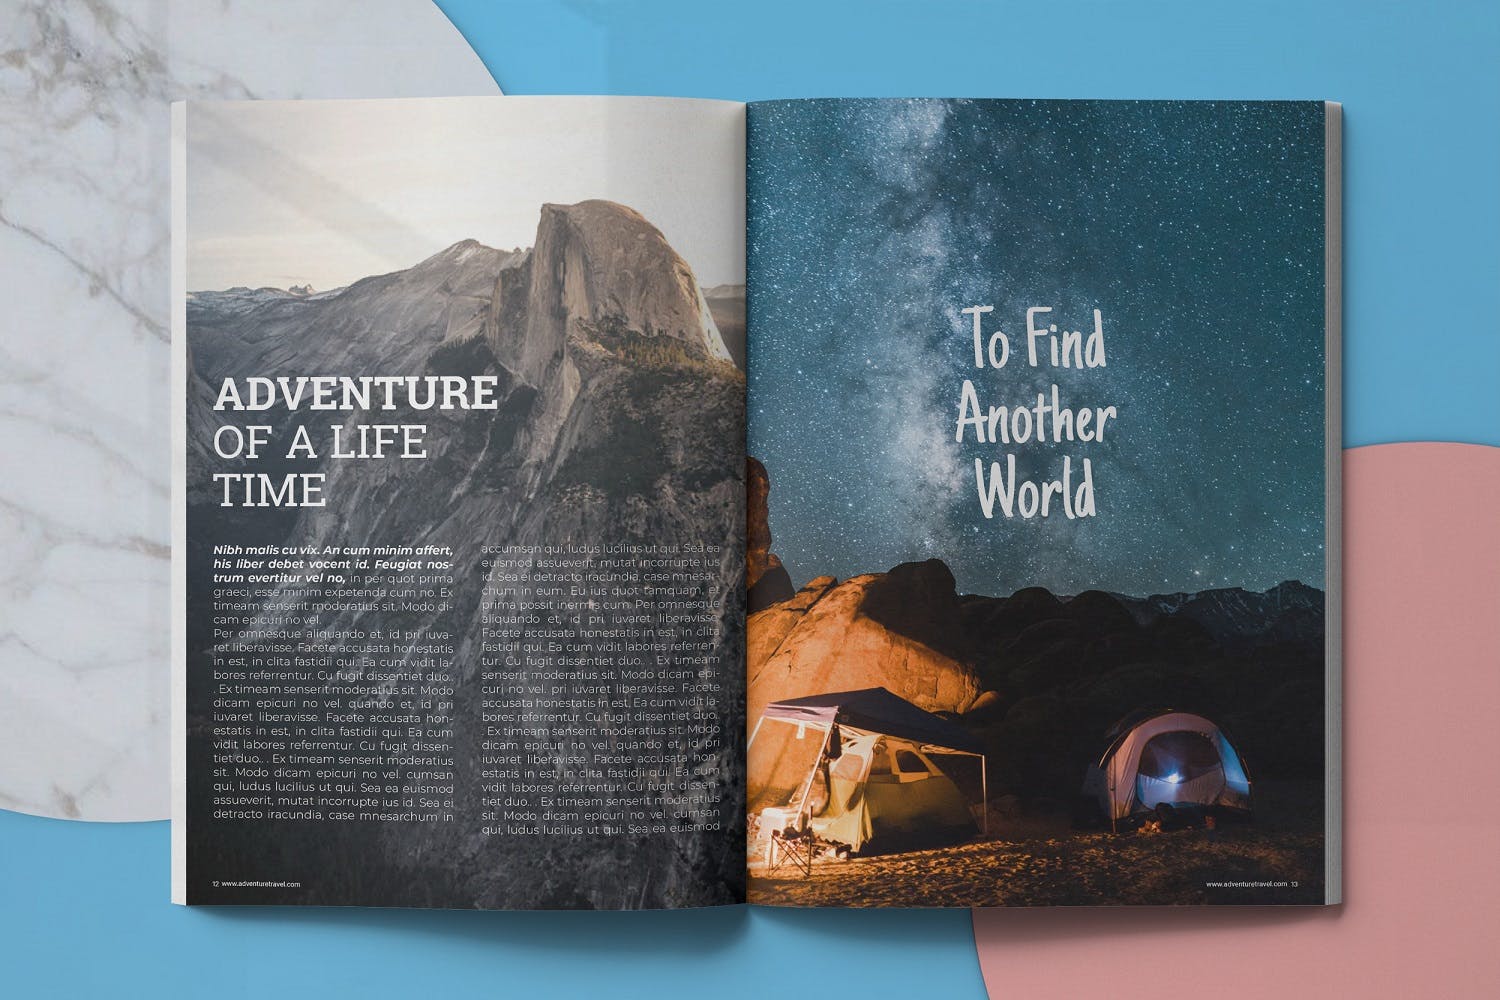 冒险旅行主题大洋岛精选杂志排版设计模板 Adventure Travel Magazine Template插图6